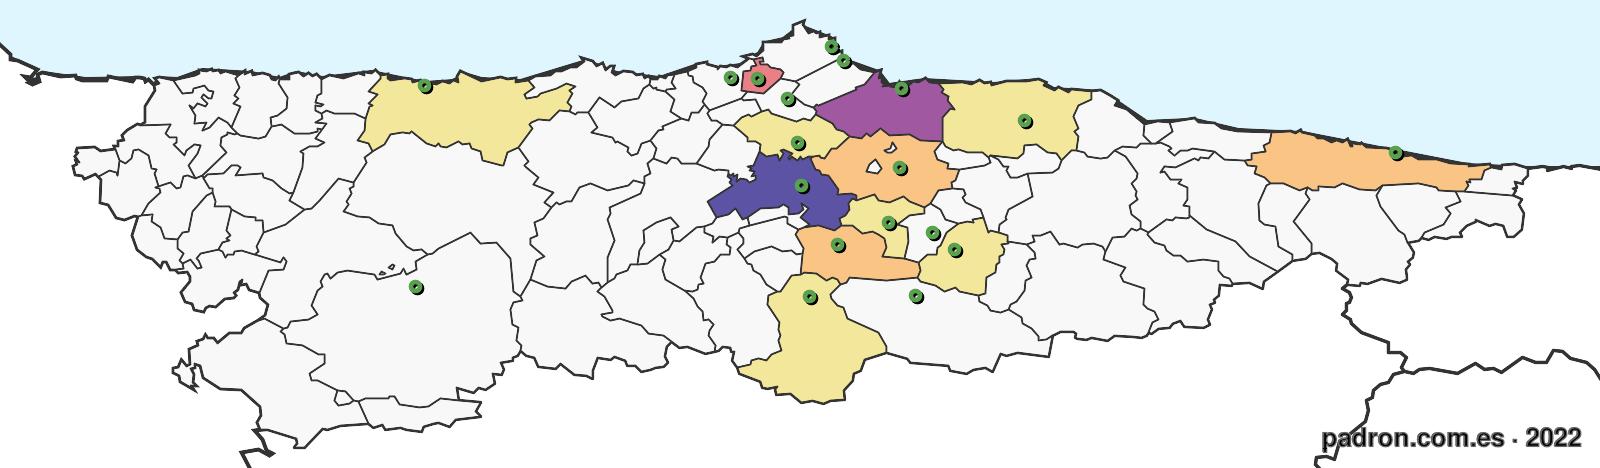 guatemaltecos en asturias.